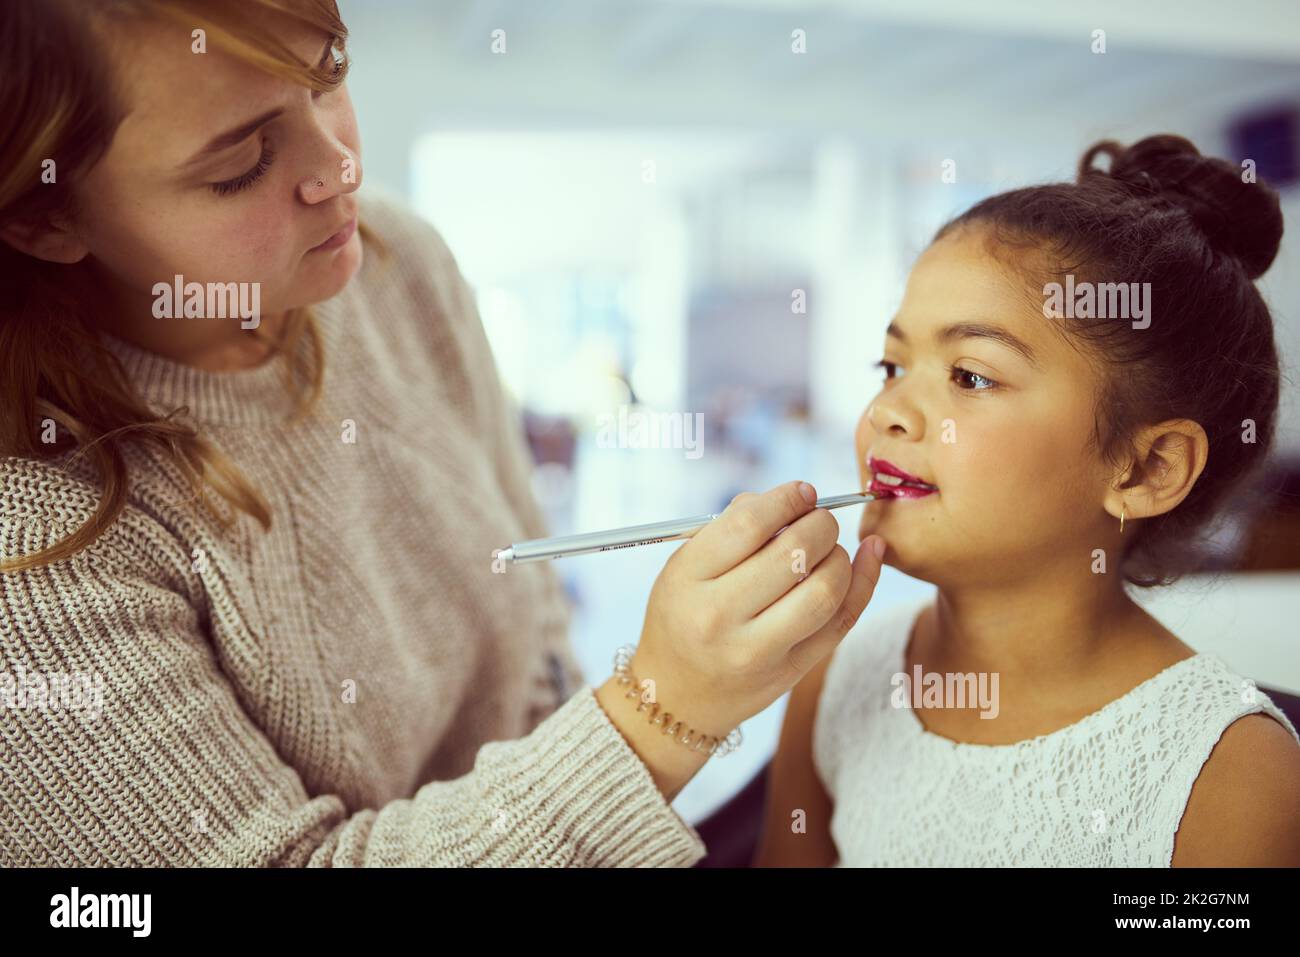 Se préparer à éblouir la foule. Photo d'un styliste appliquant du maquillage à une petite fille mignonne dans un dressing. Banque D'Images